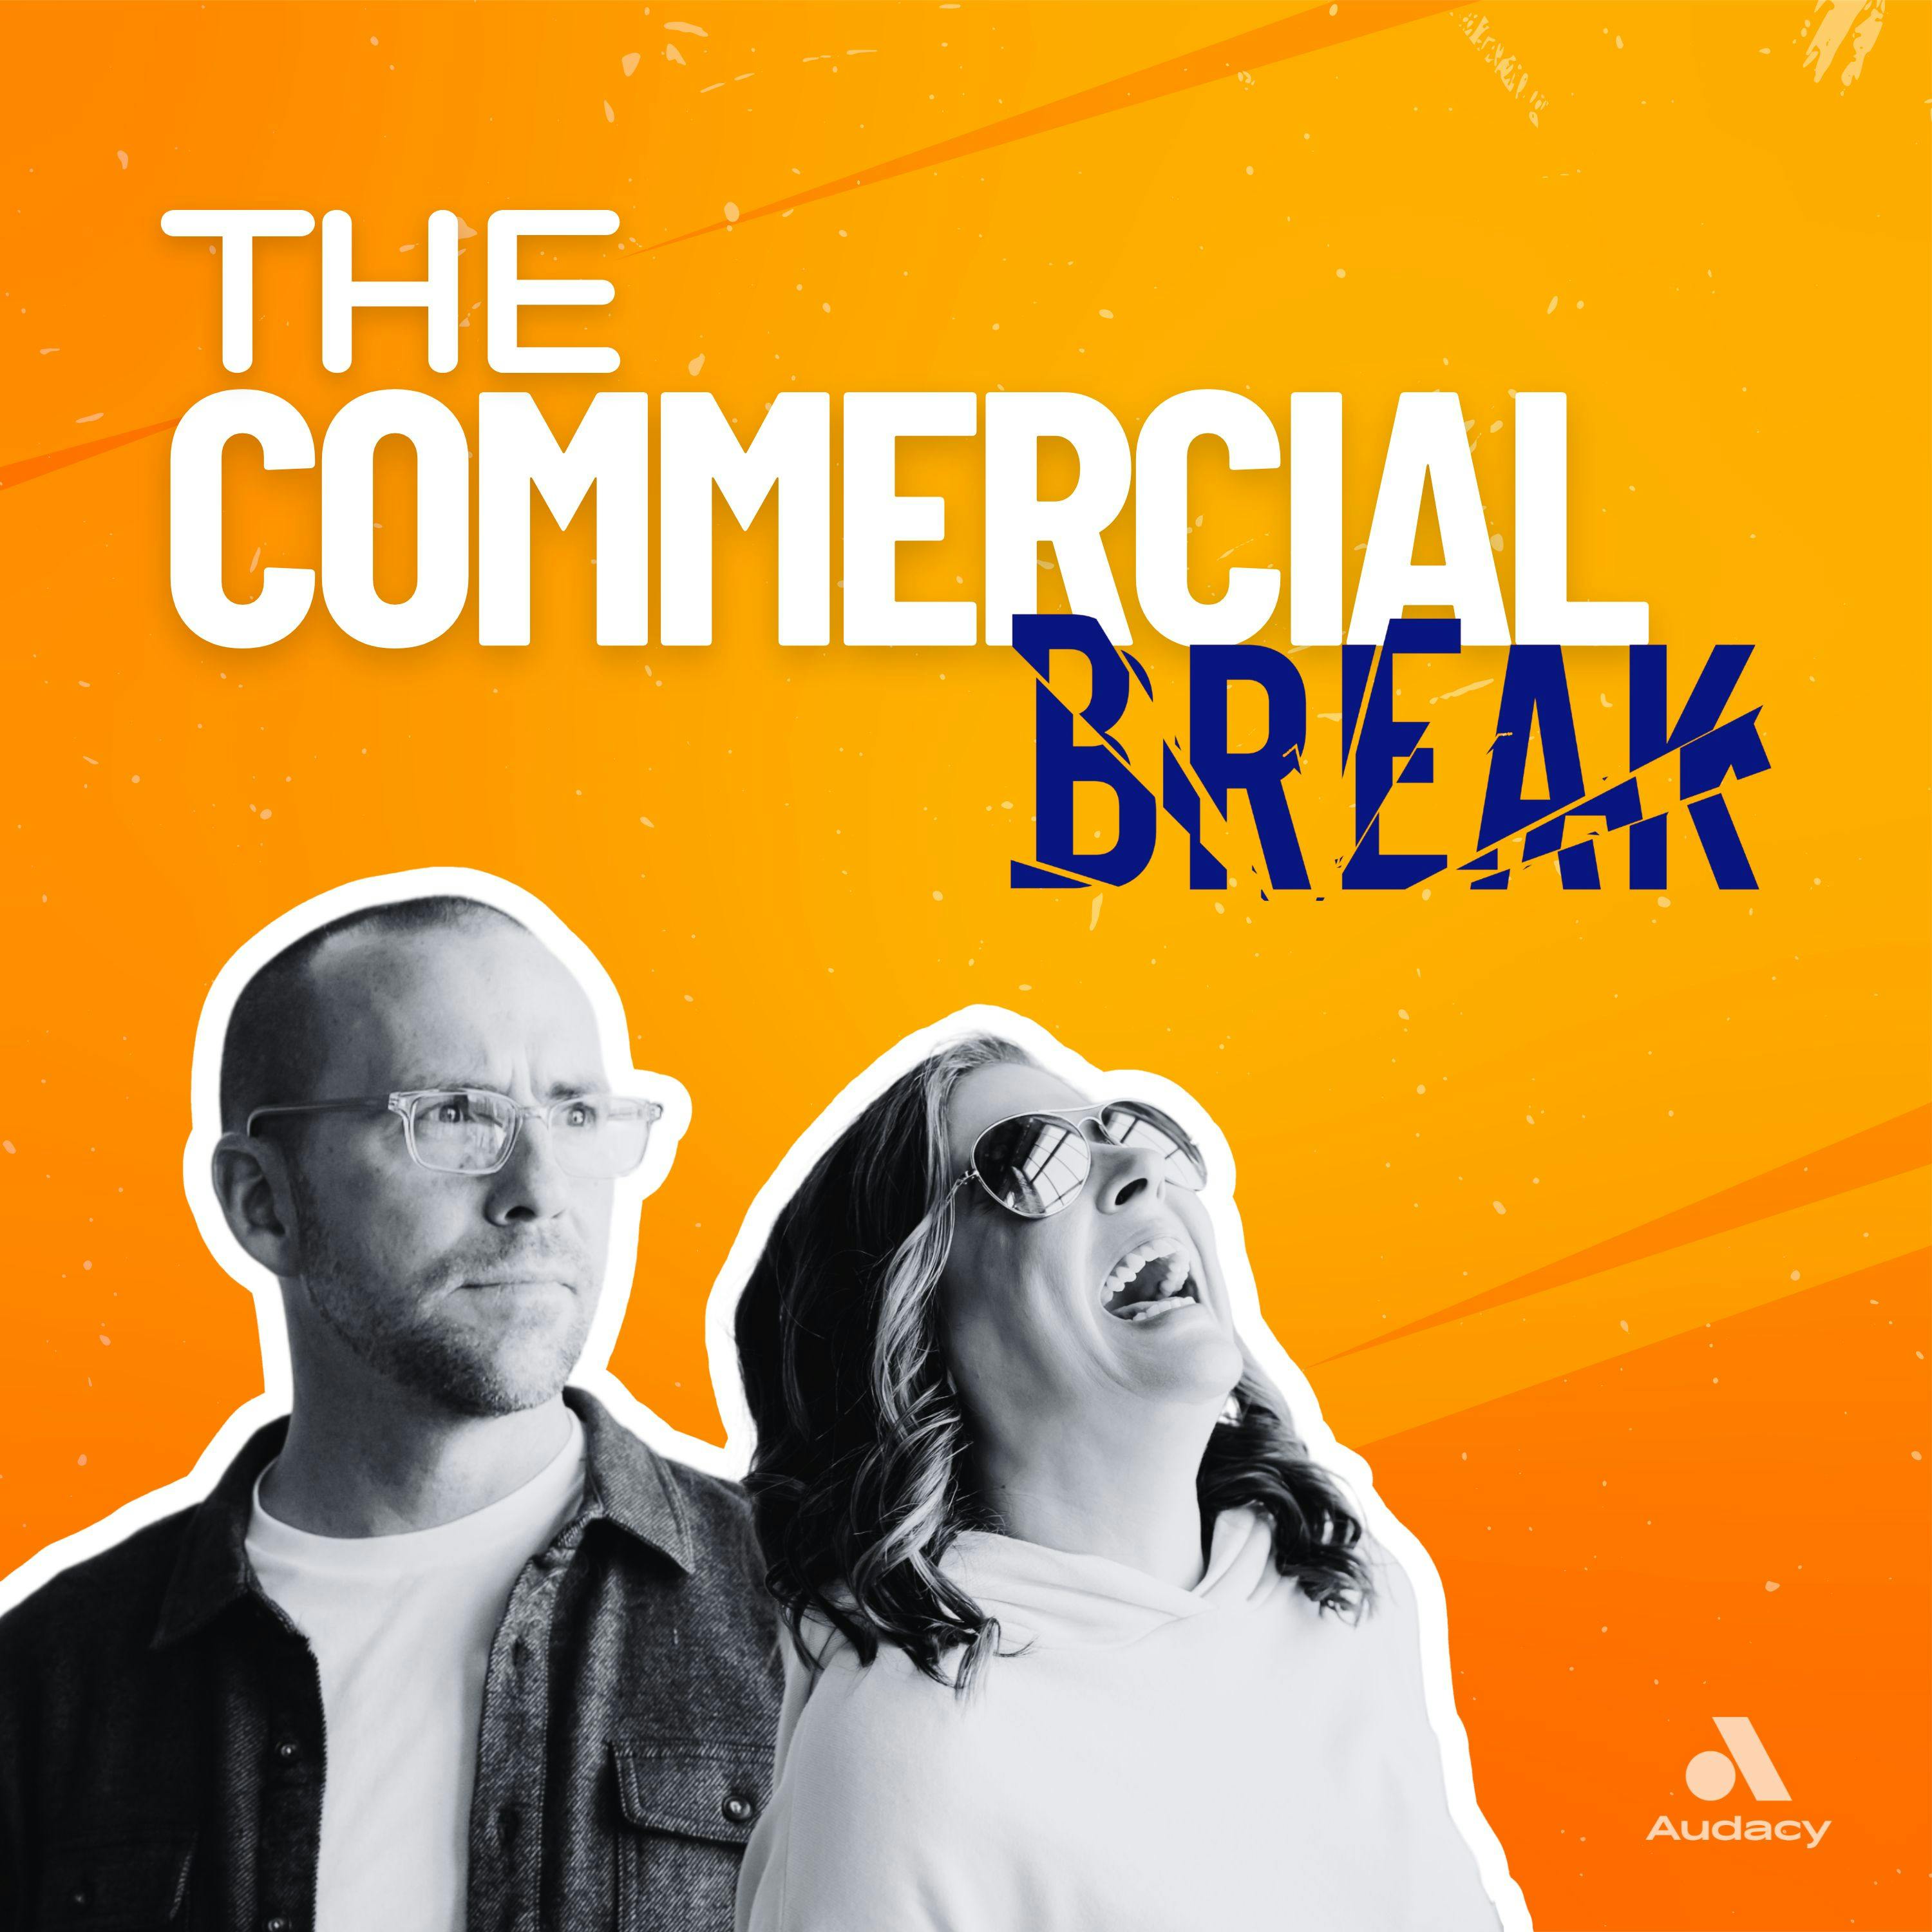 Meet The Tripod of Sales by Commercial Break LLC 